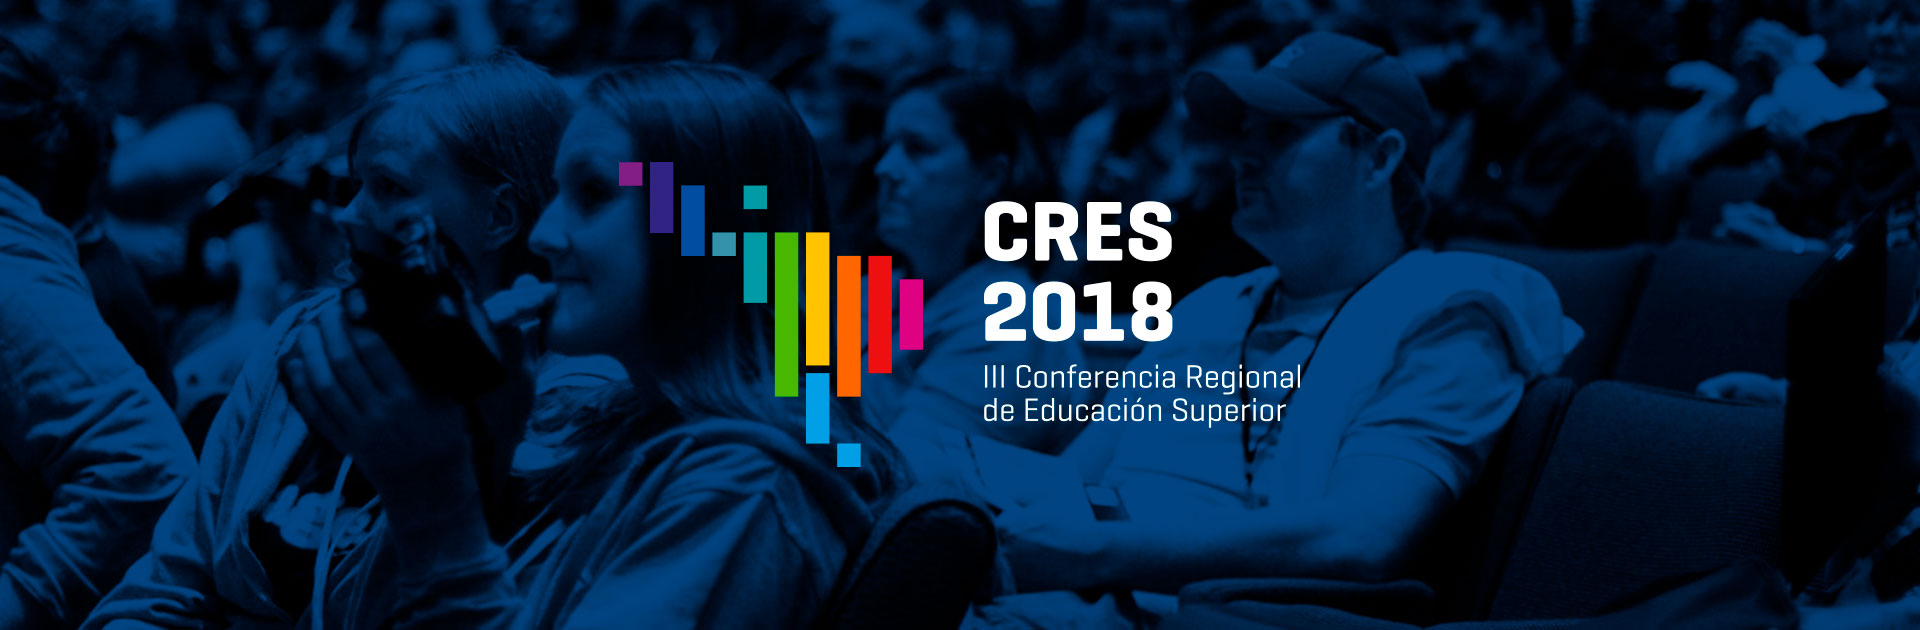 La CRES 2018 está en marcha